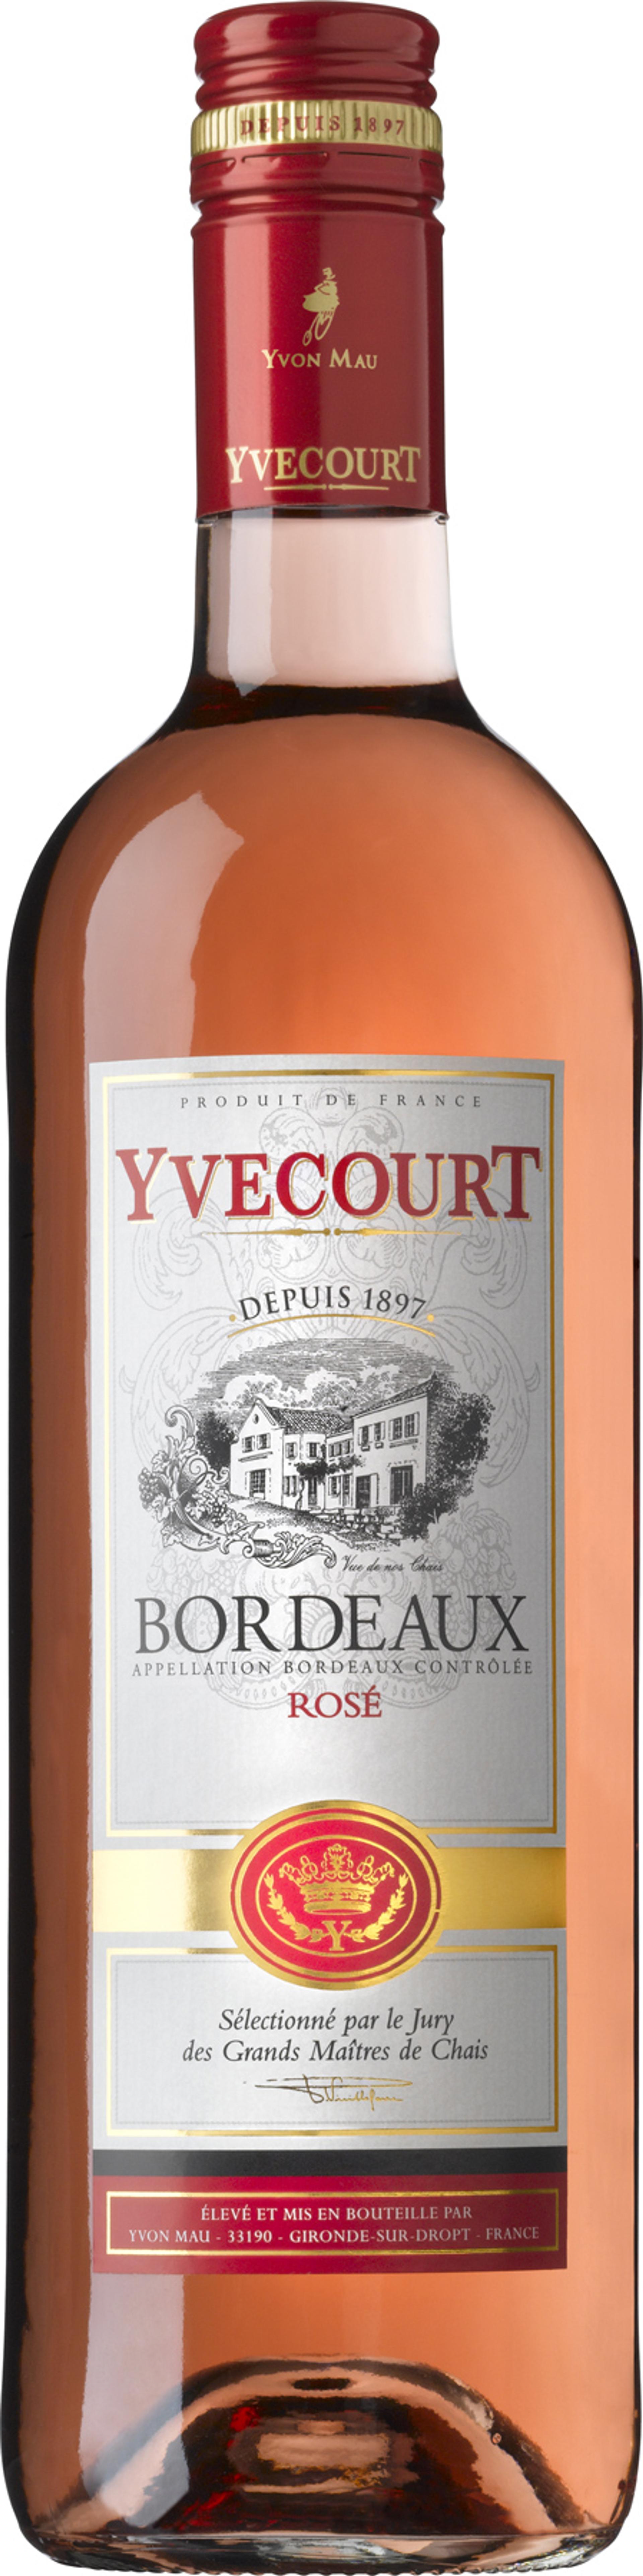 Yvecourt Bordeaux rosé